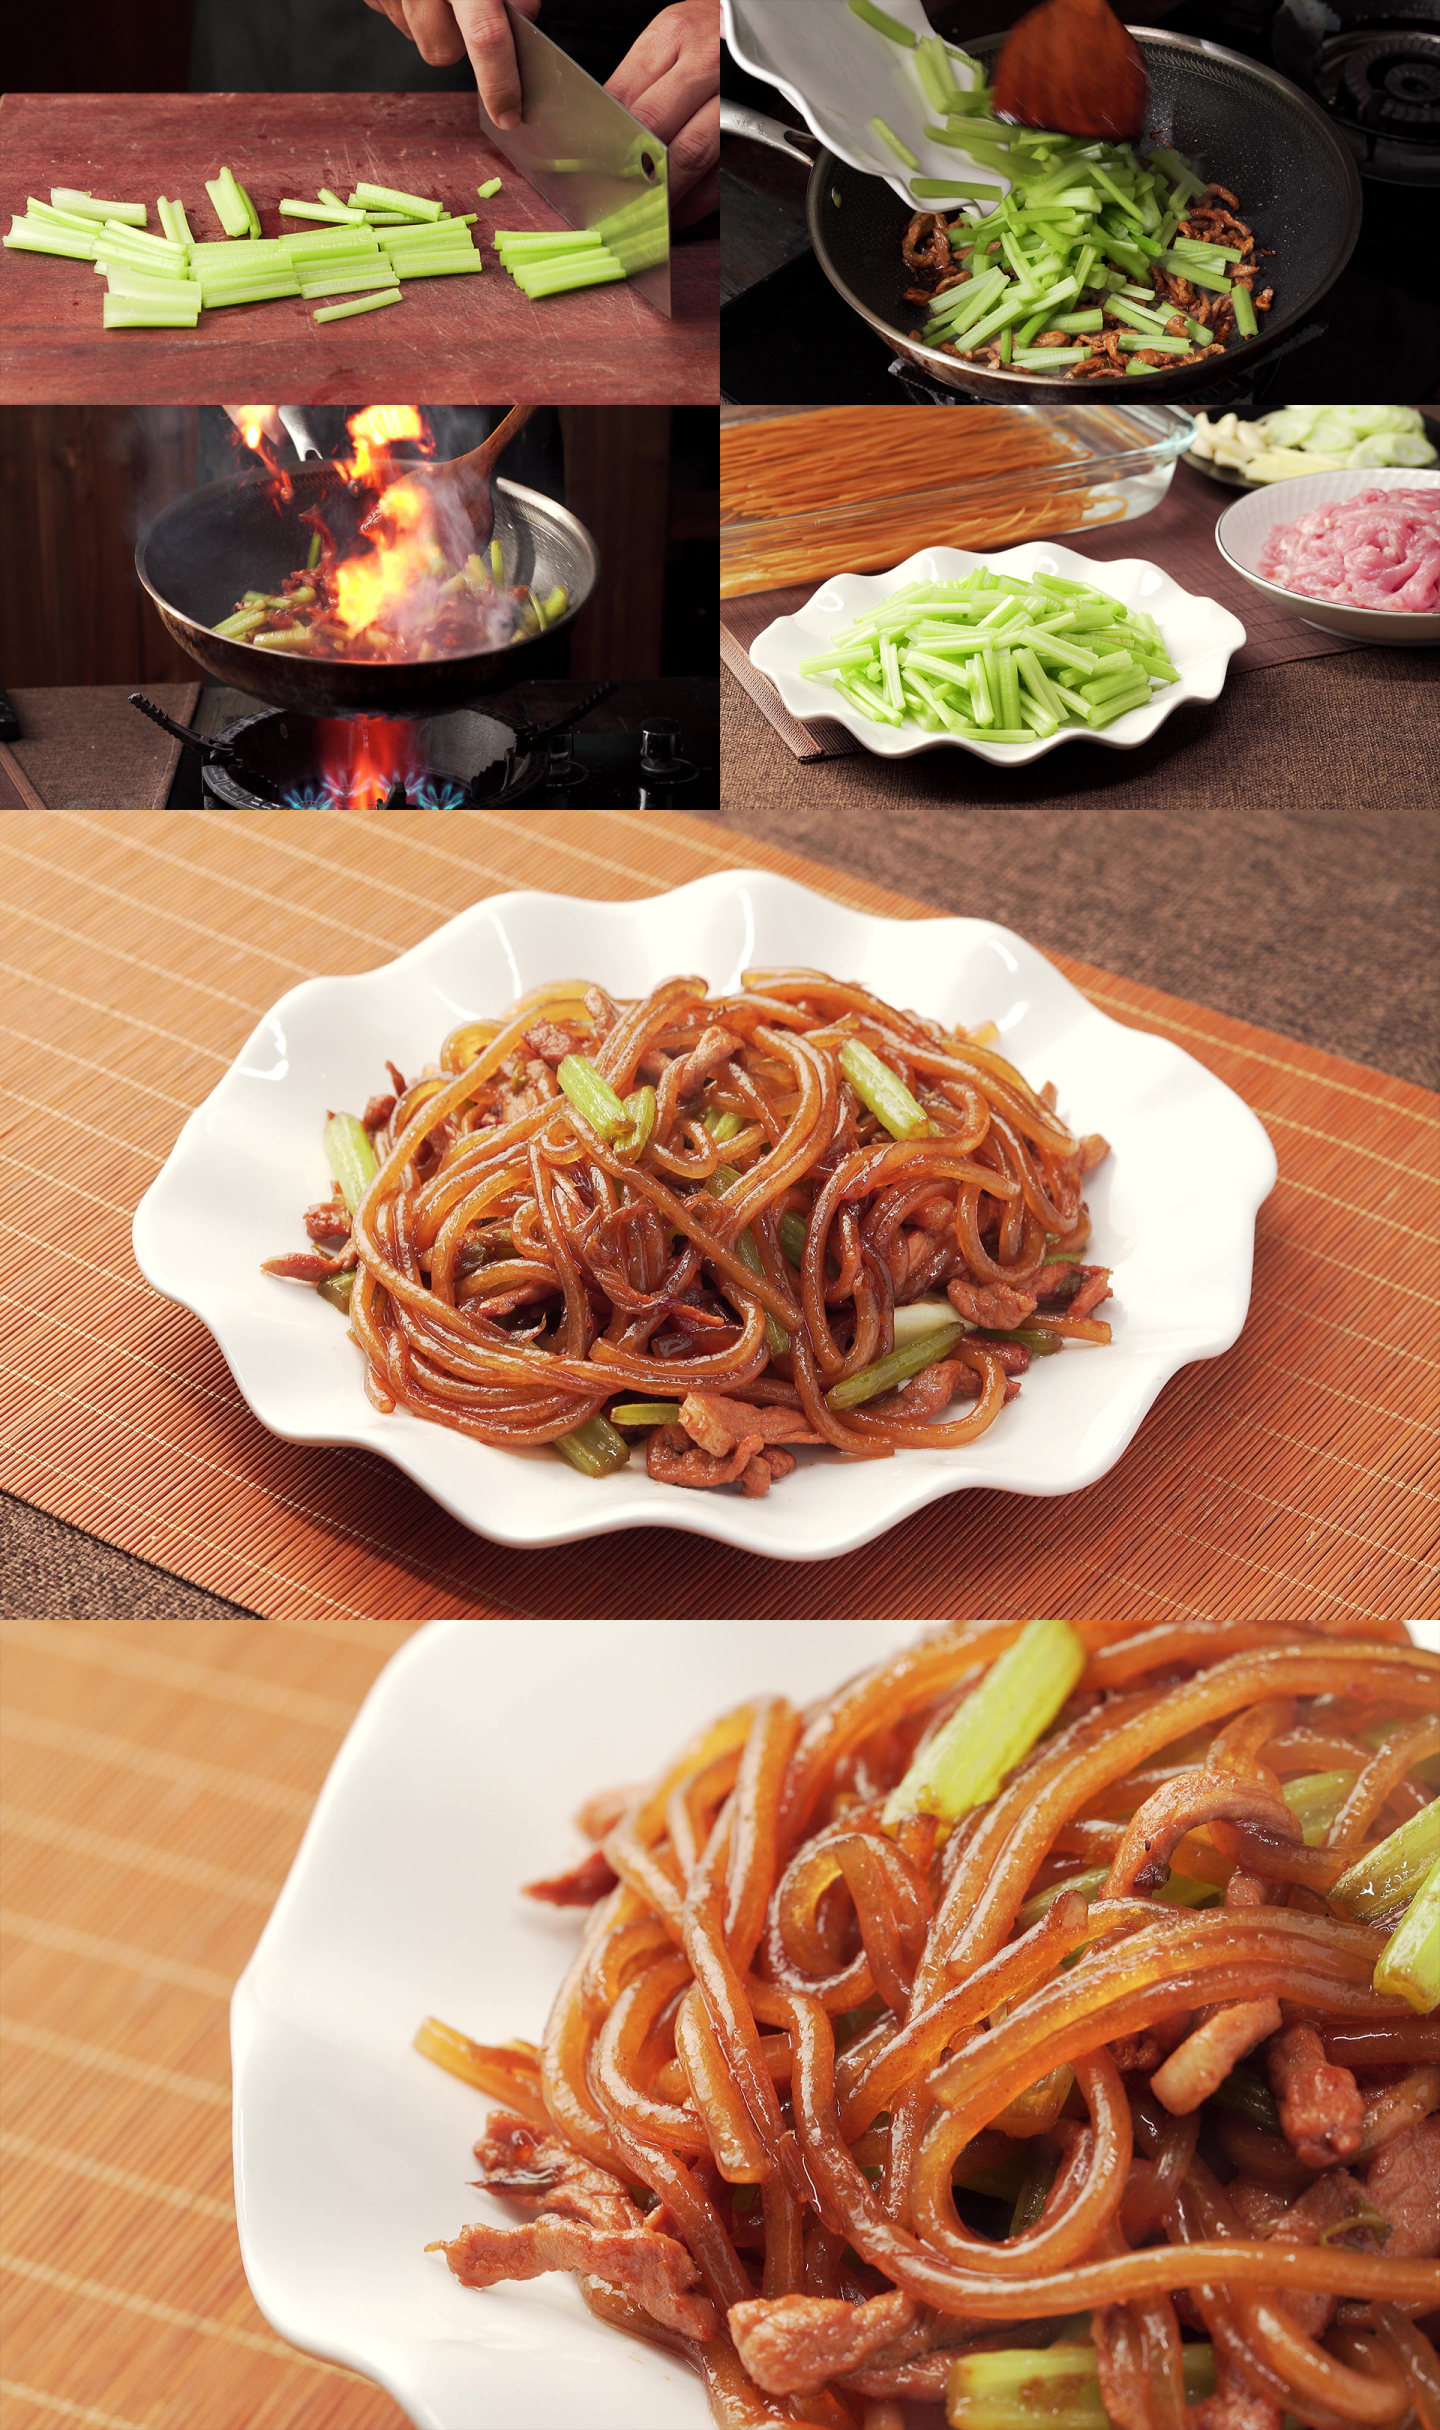 中国东北地方特色菜肴芹菜炒粉烹饪过程